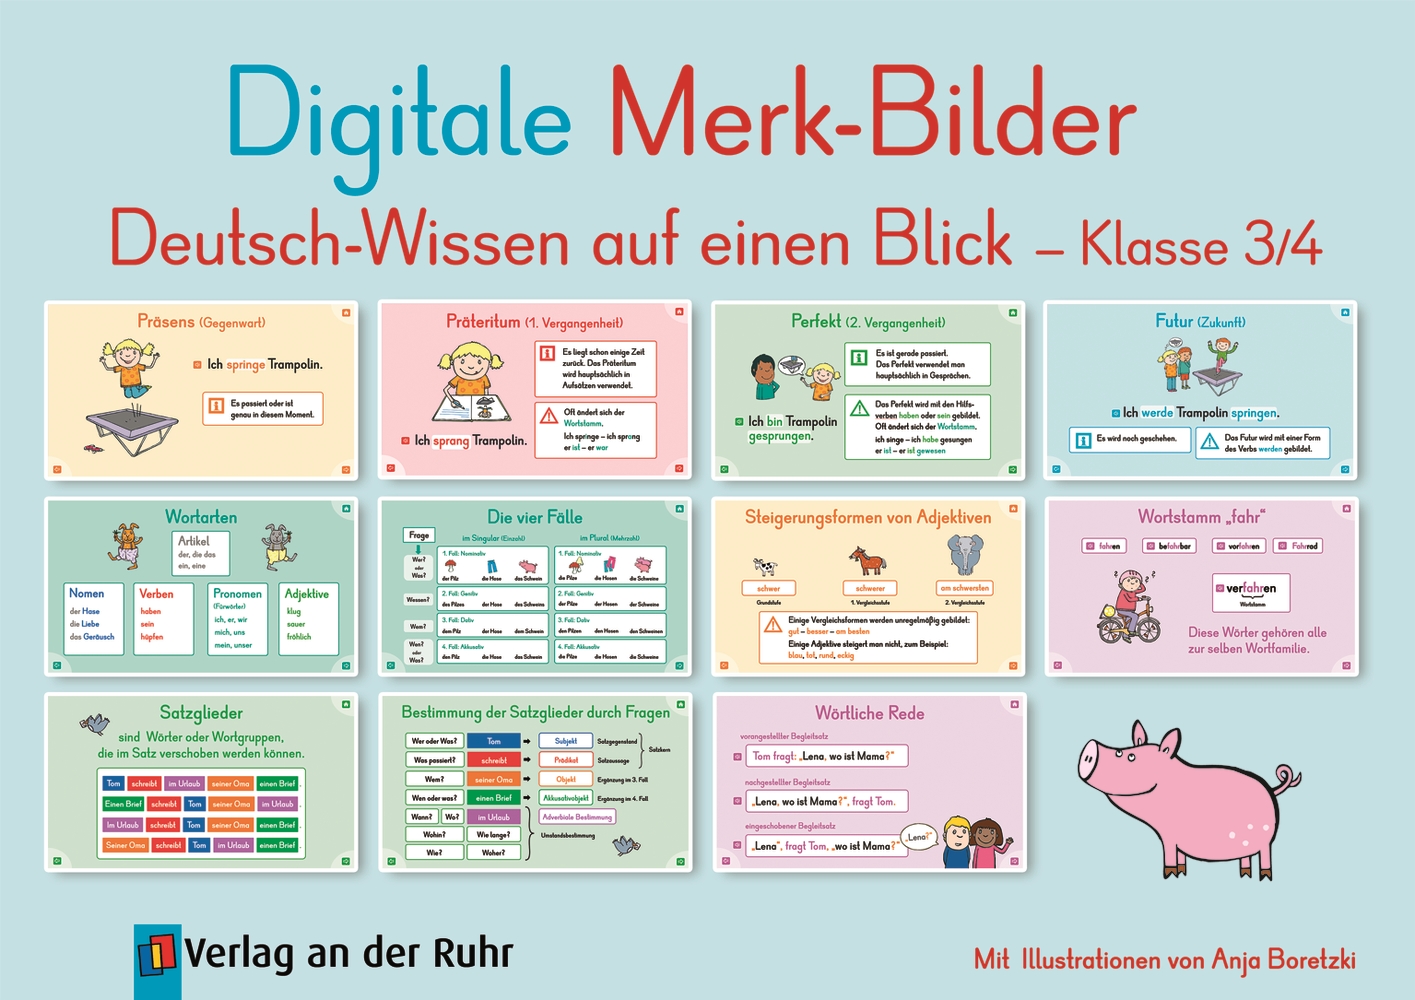 Digitale Merk-Bilder - Deutsch-Wissen auf einen Blick, Klasse 3/4 - Pro-Lizenz - Online